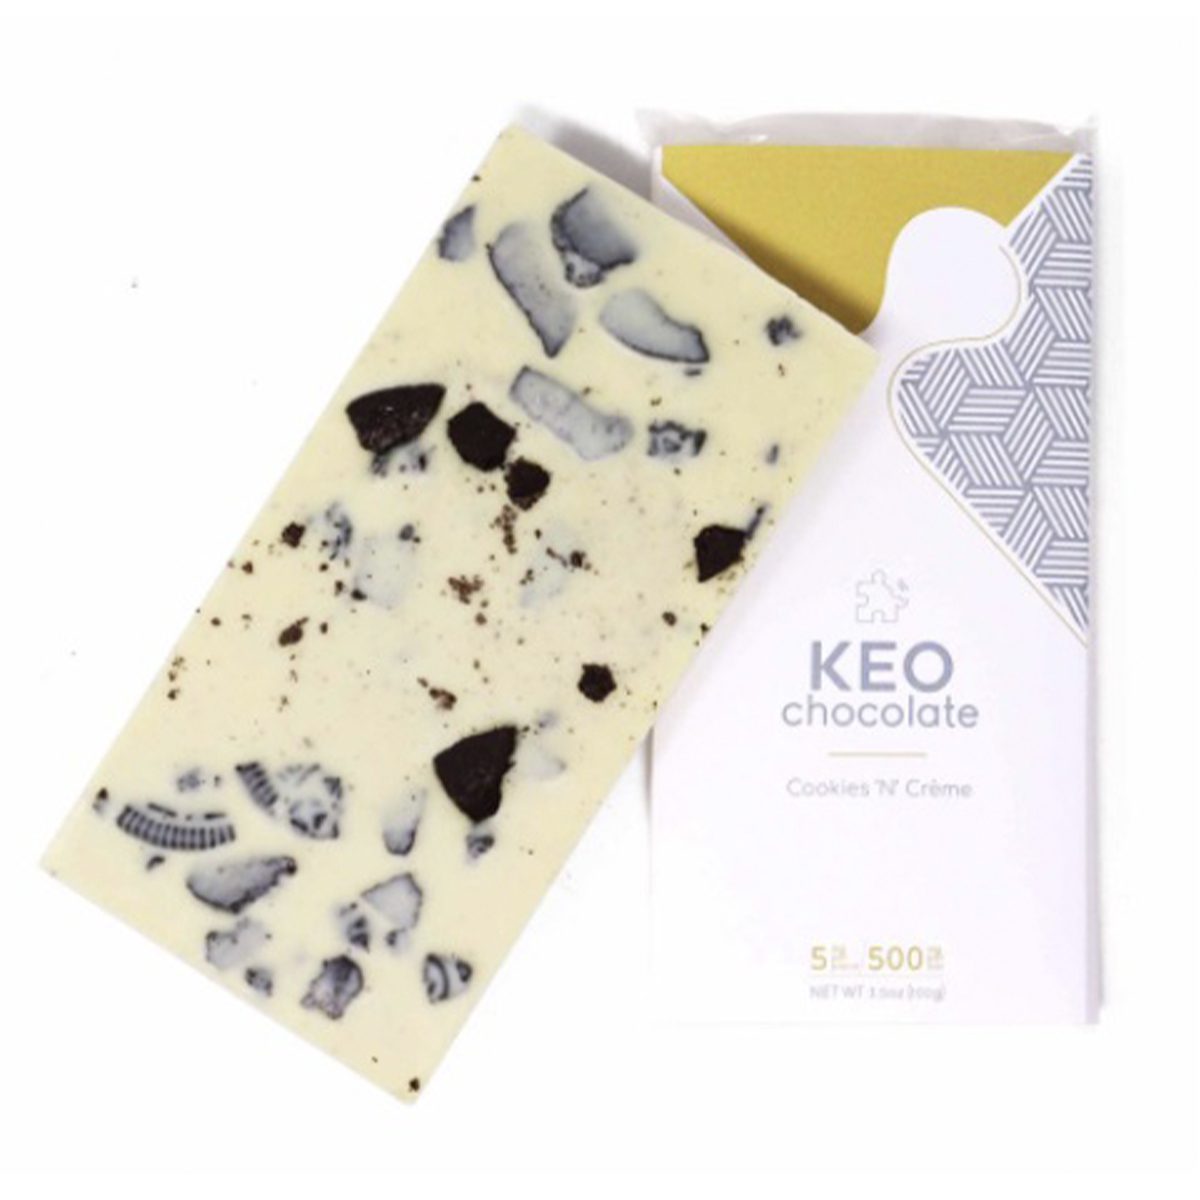 Cookies ‘N’ Creme 500mg Chocolate Bar By Keo Edibles